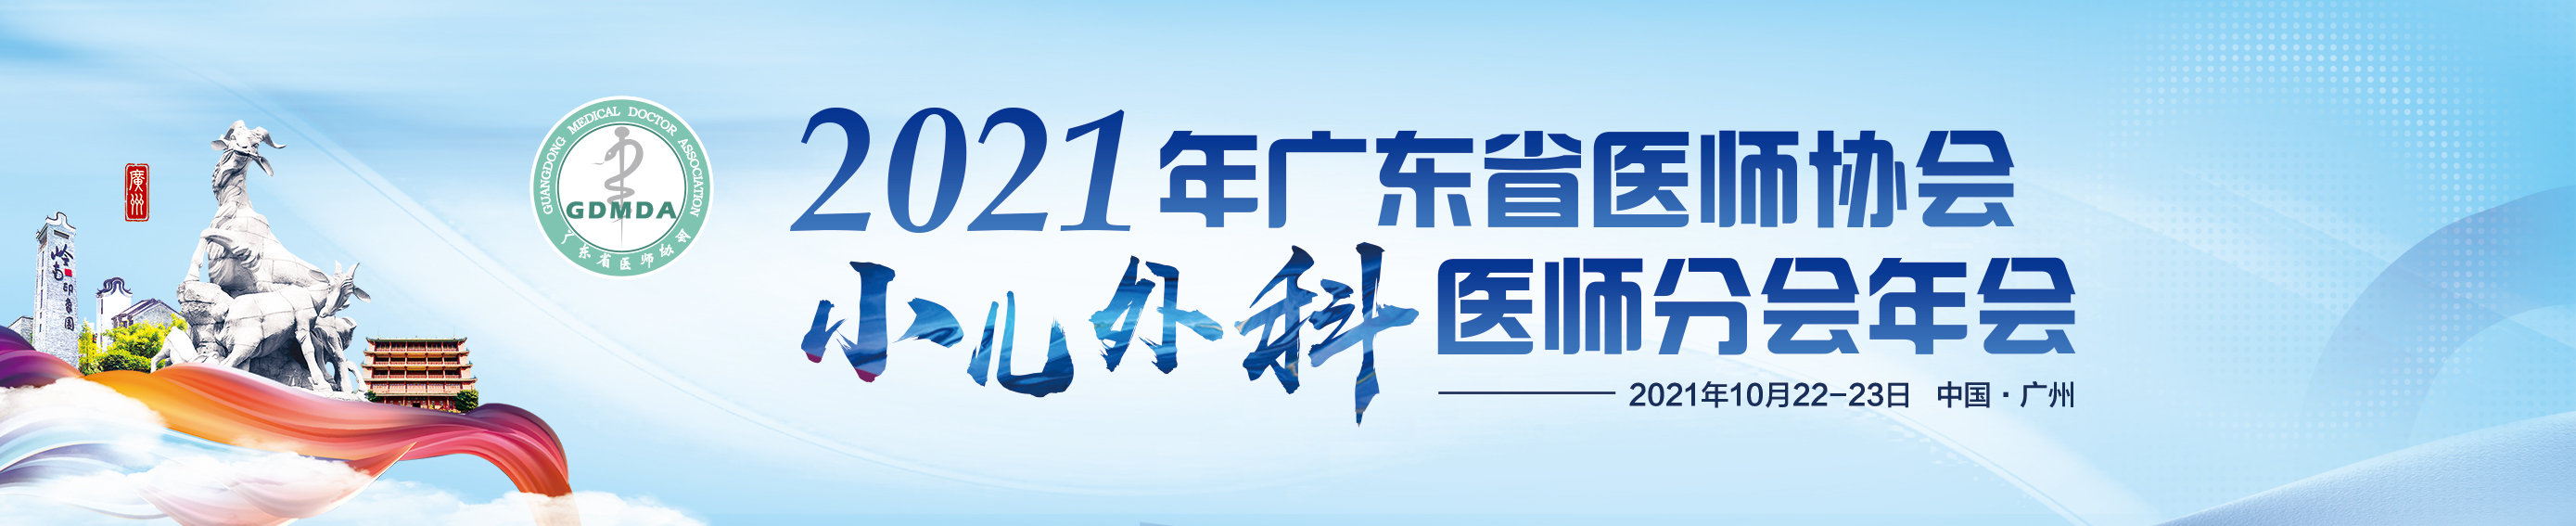 2021年广东省医师协会小儿外科医师分会年会